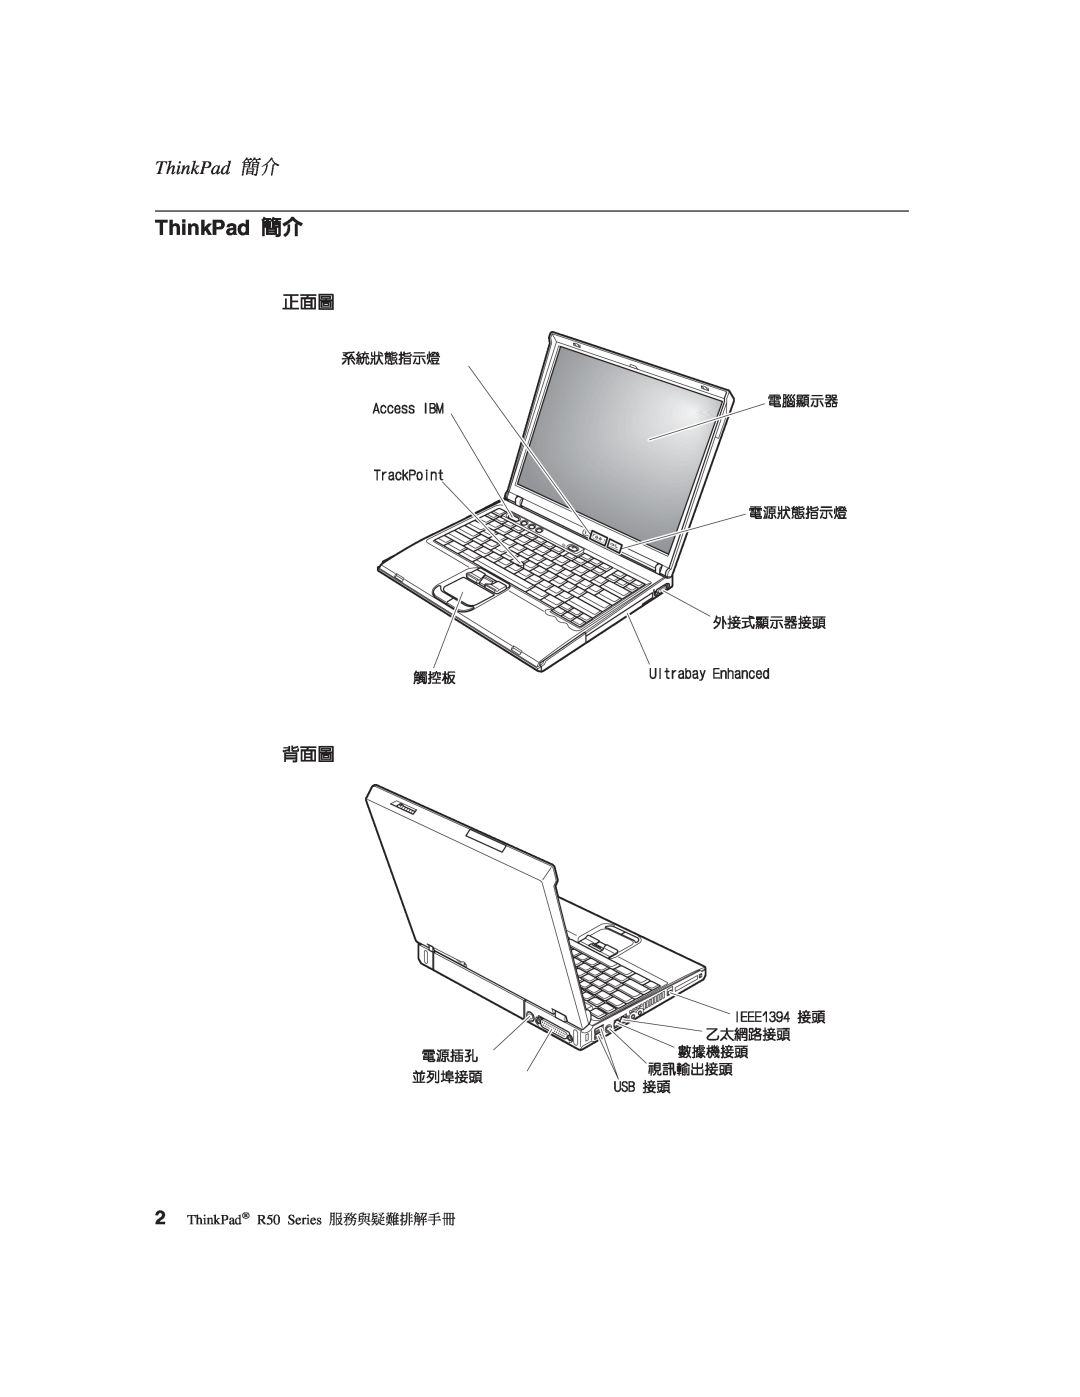 IBM R50 manual ThinkPad 